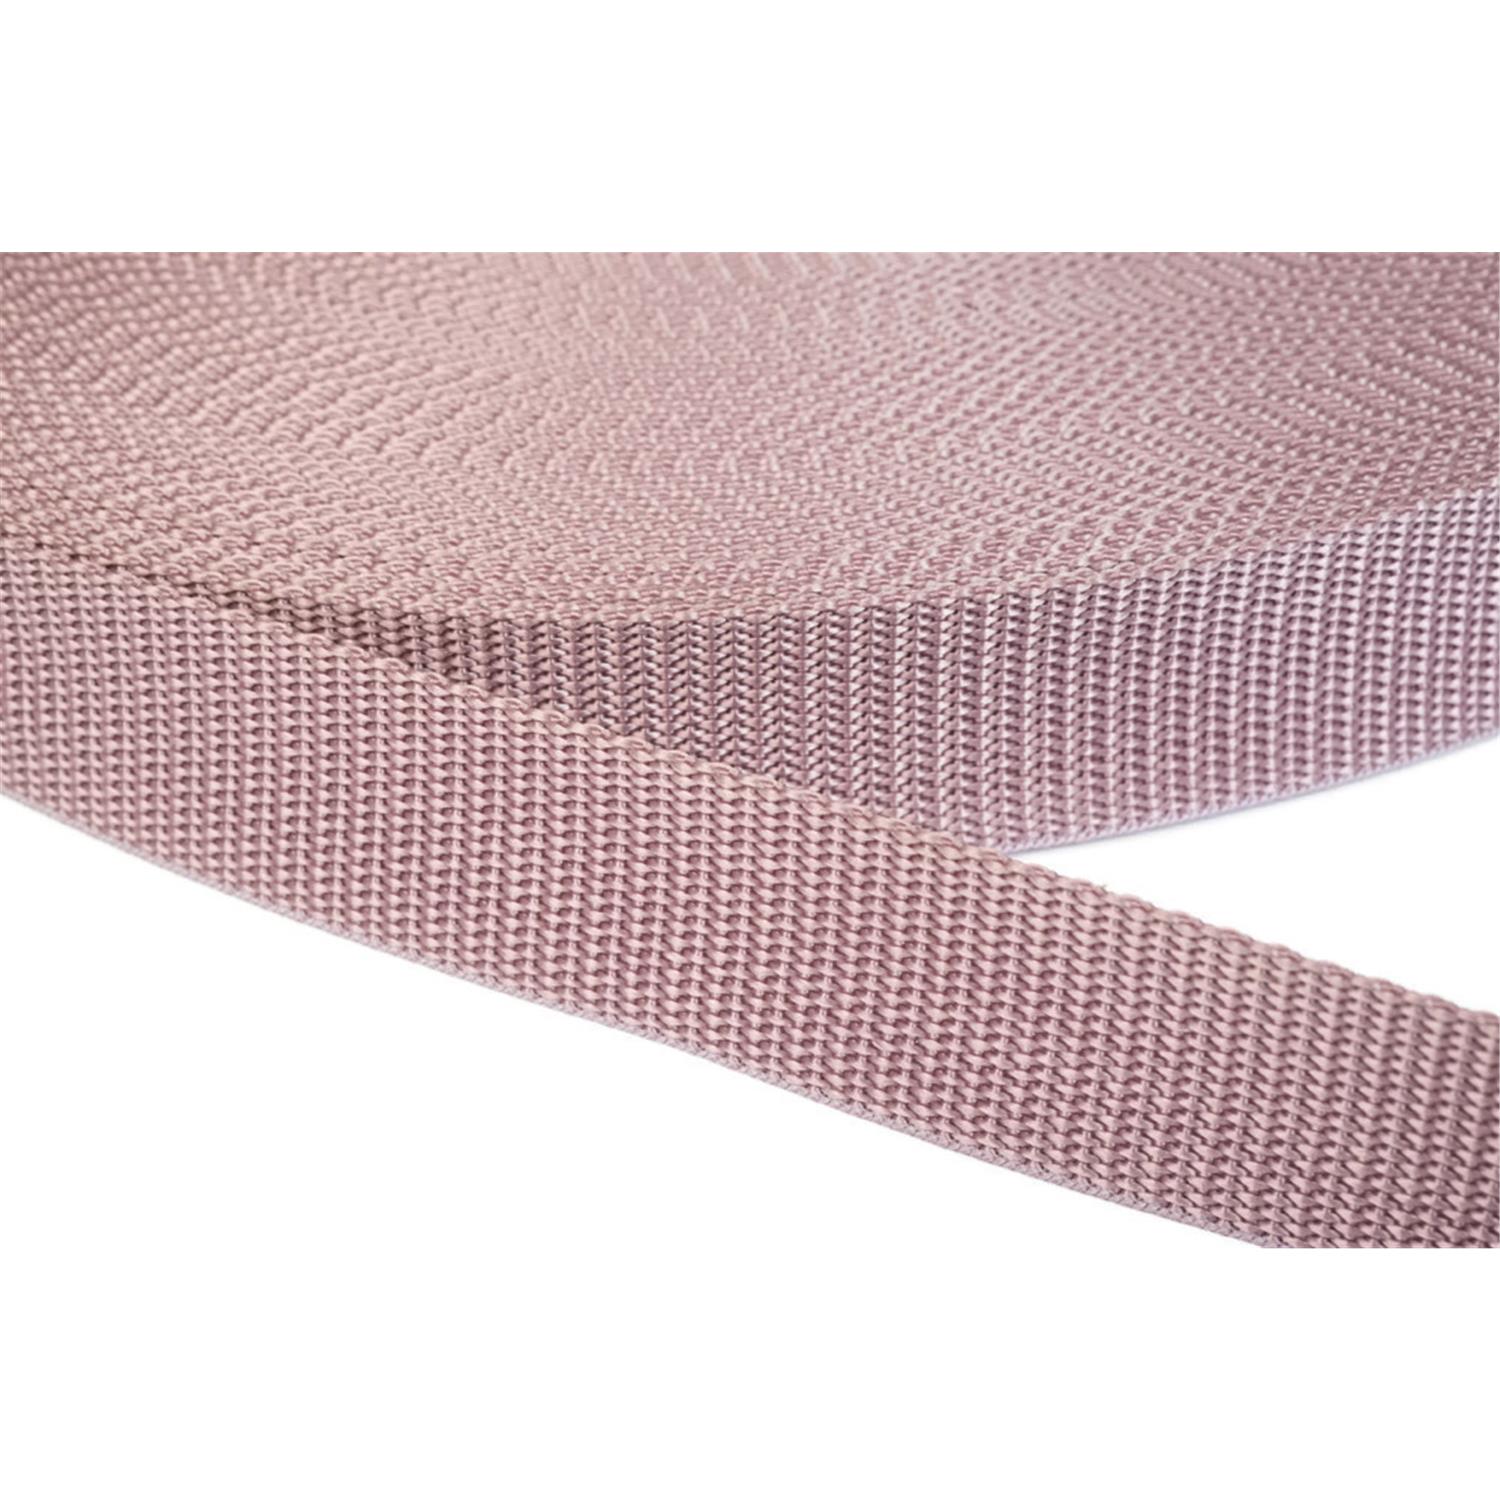 Gurtband 50mm breit aus Polypropylen in 41 Farben 15 - altrosa 12 Meter